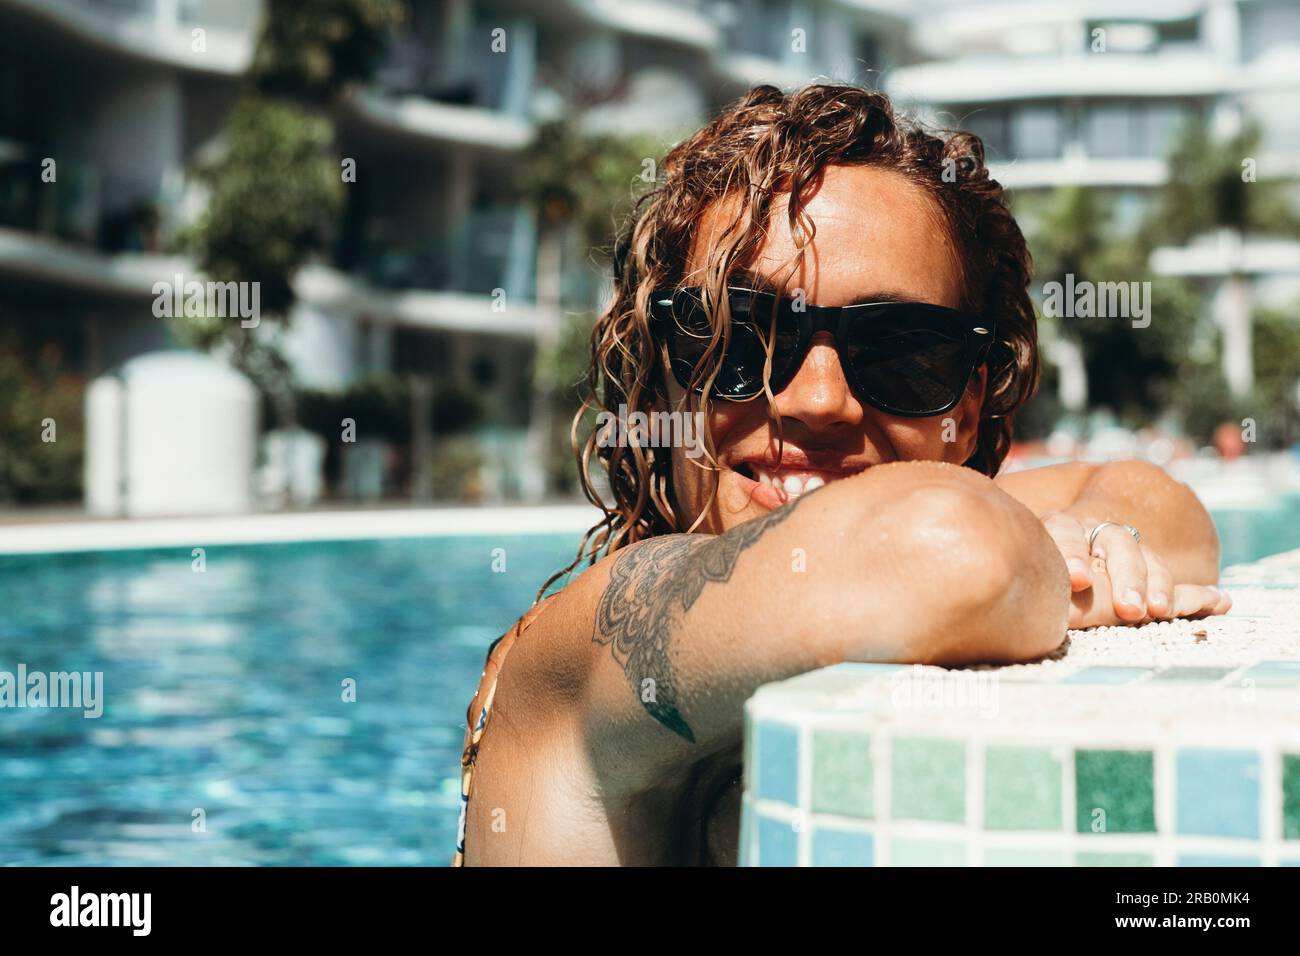 Un turista allegro si goda la piscina e il sole durante le vacanze estive con un resort di lusso in sottofondo. Indossare occhiali da sole. Donne moderne con un sorriso tatuato all'interno dell'acqua della piscina. in salute Foto Stock